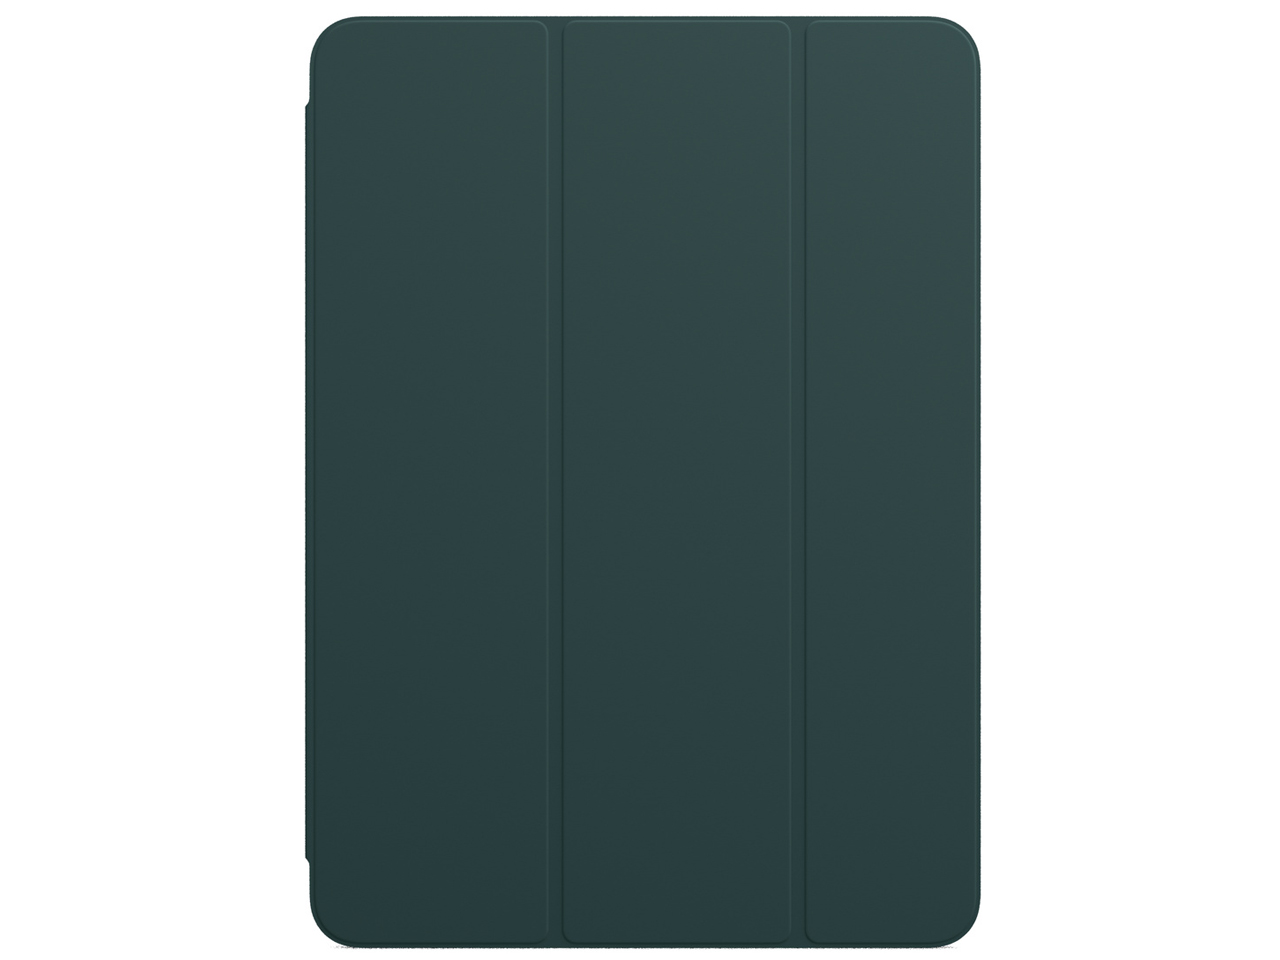 11インチiPad Pro(第3世代)用 Smart Folio MJMD3FE/A [マラードグリーン]